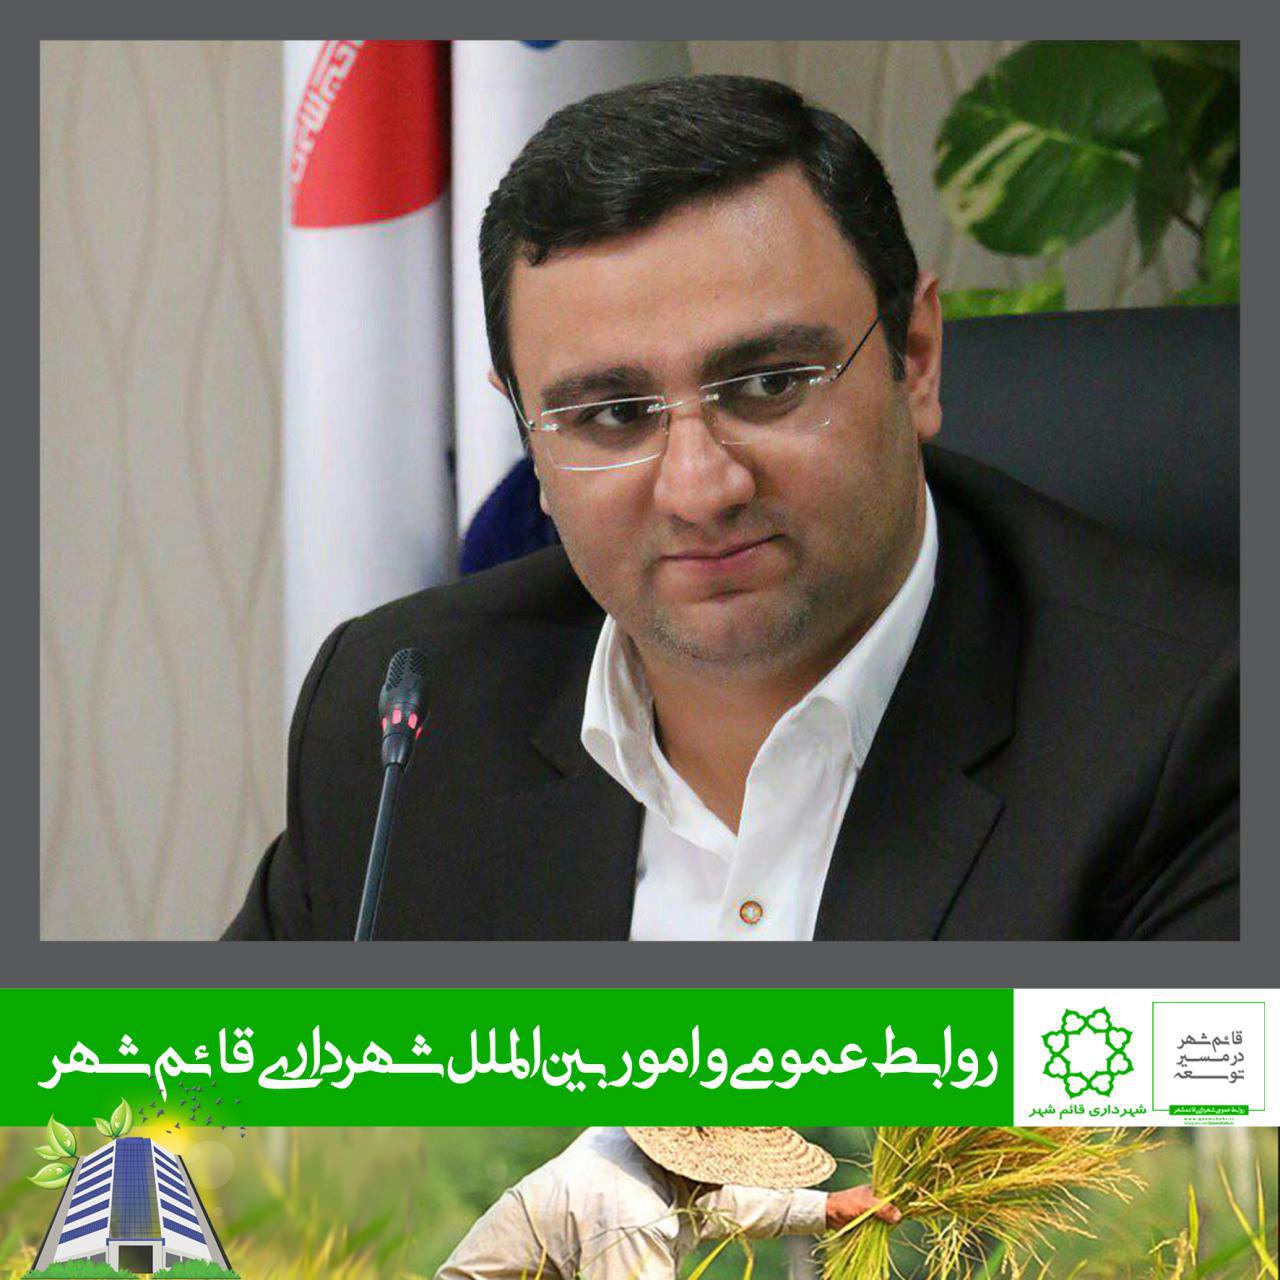 انتخاب مهندس سیدهادی فضلی به عنوان رئیس شورای اسلامی شهر قائم شهر